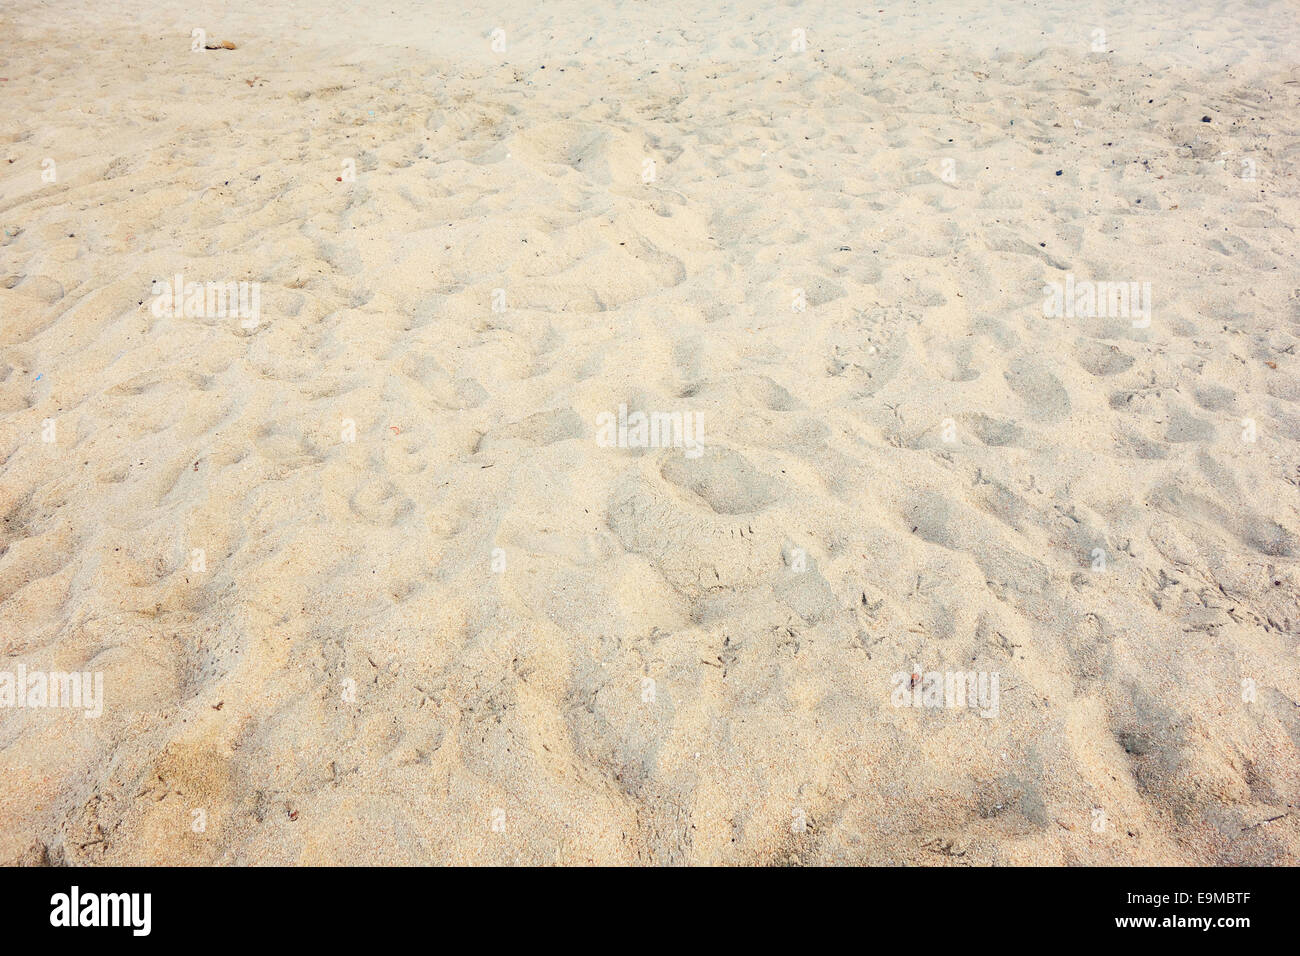 cierra la textura de la arena en la playa en verano. patrón de playa  natural de arena blanca 17186167 Foto de stock en Vecteezy